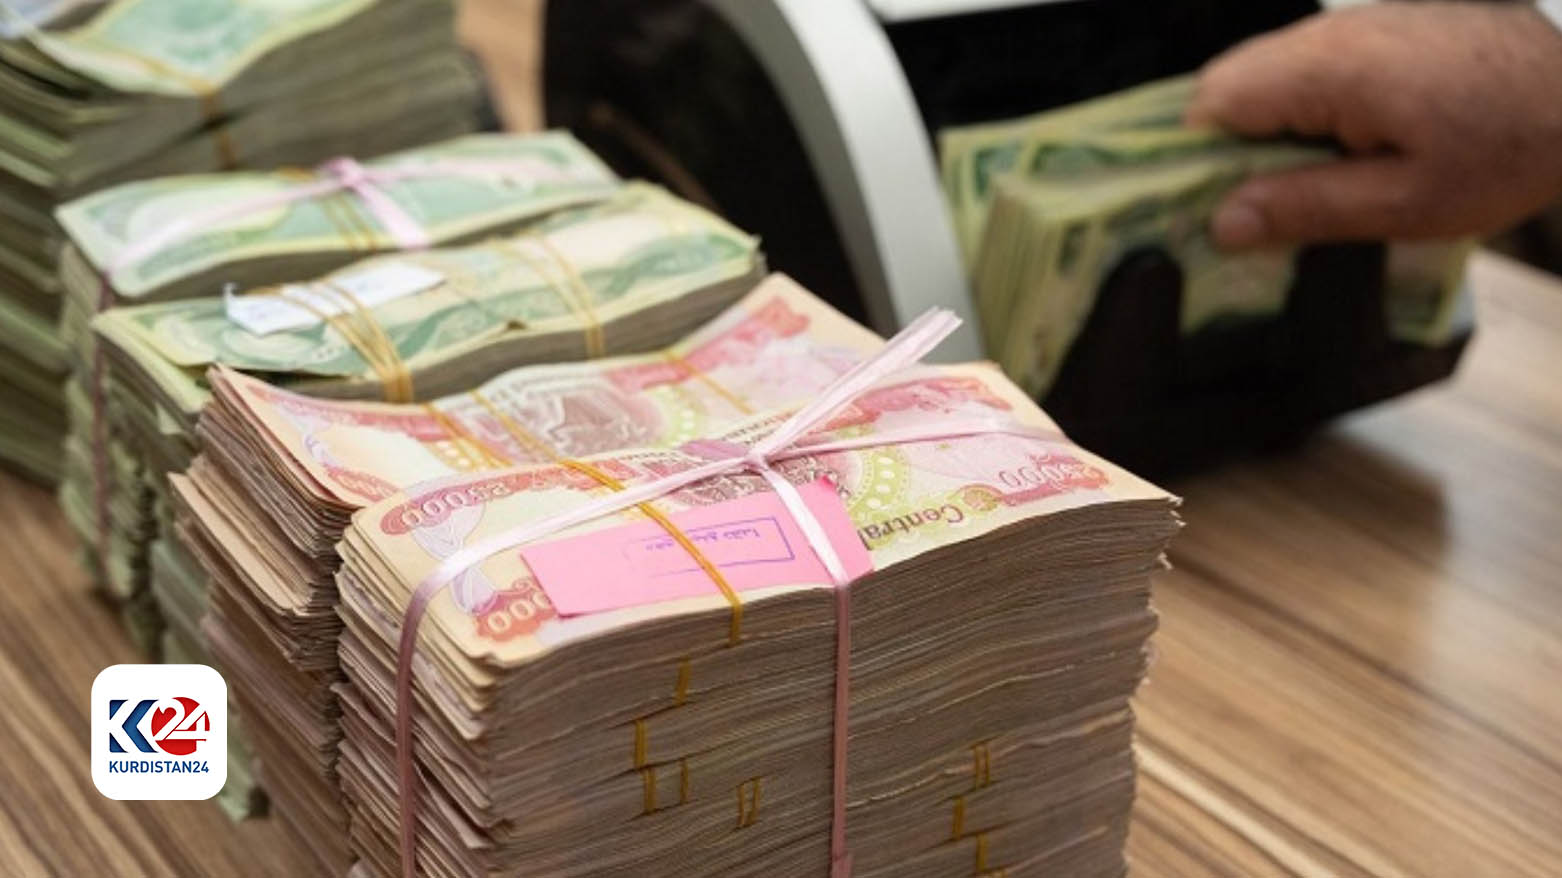 A citizen counts cash money. (Photo: Kurdistan 24)